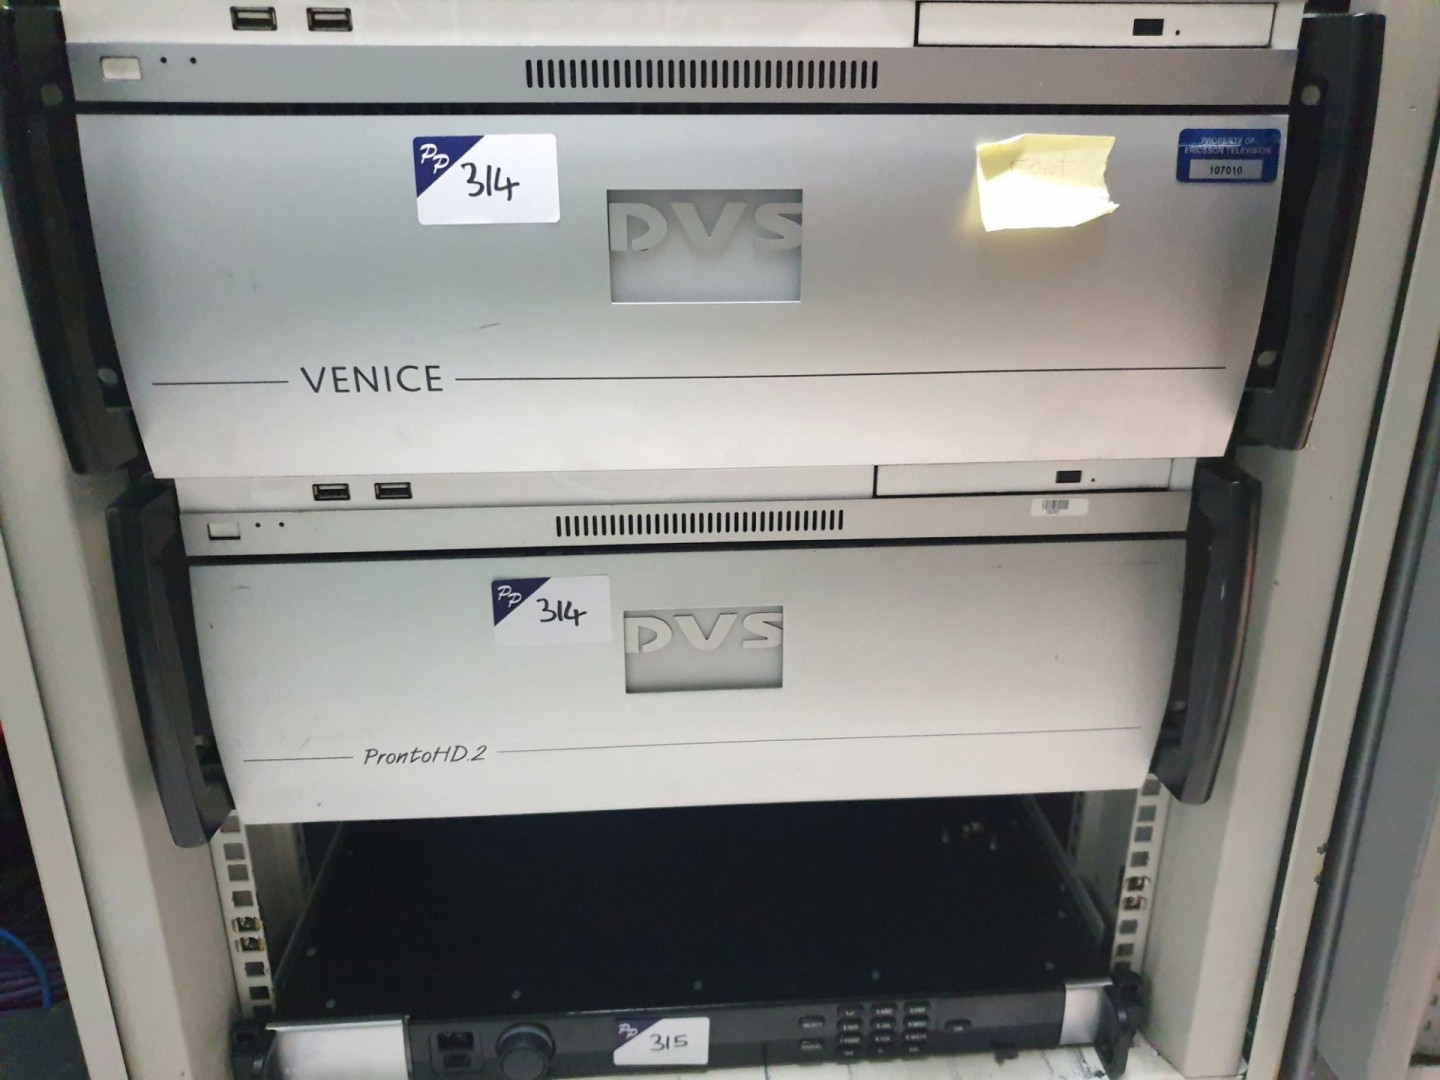 2x EEVS rack type PC's